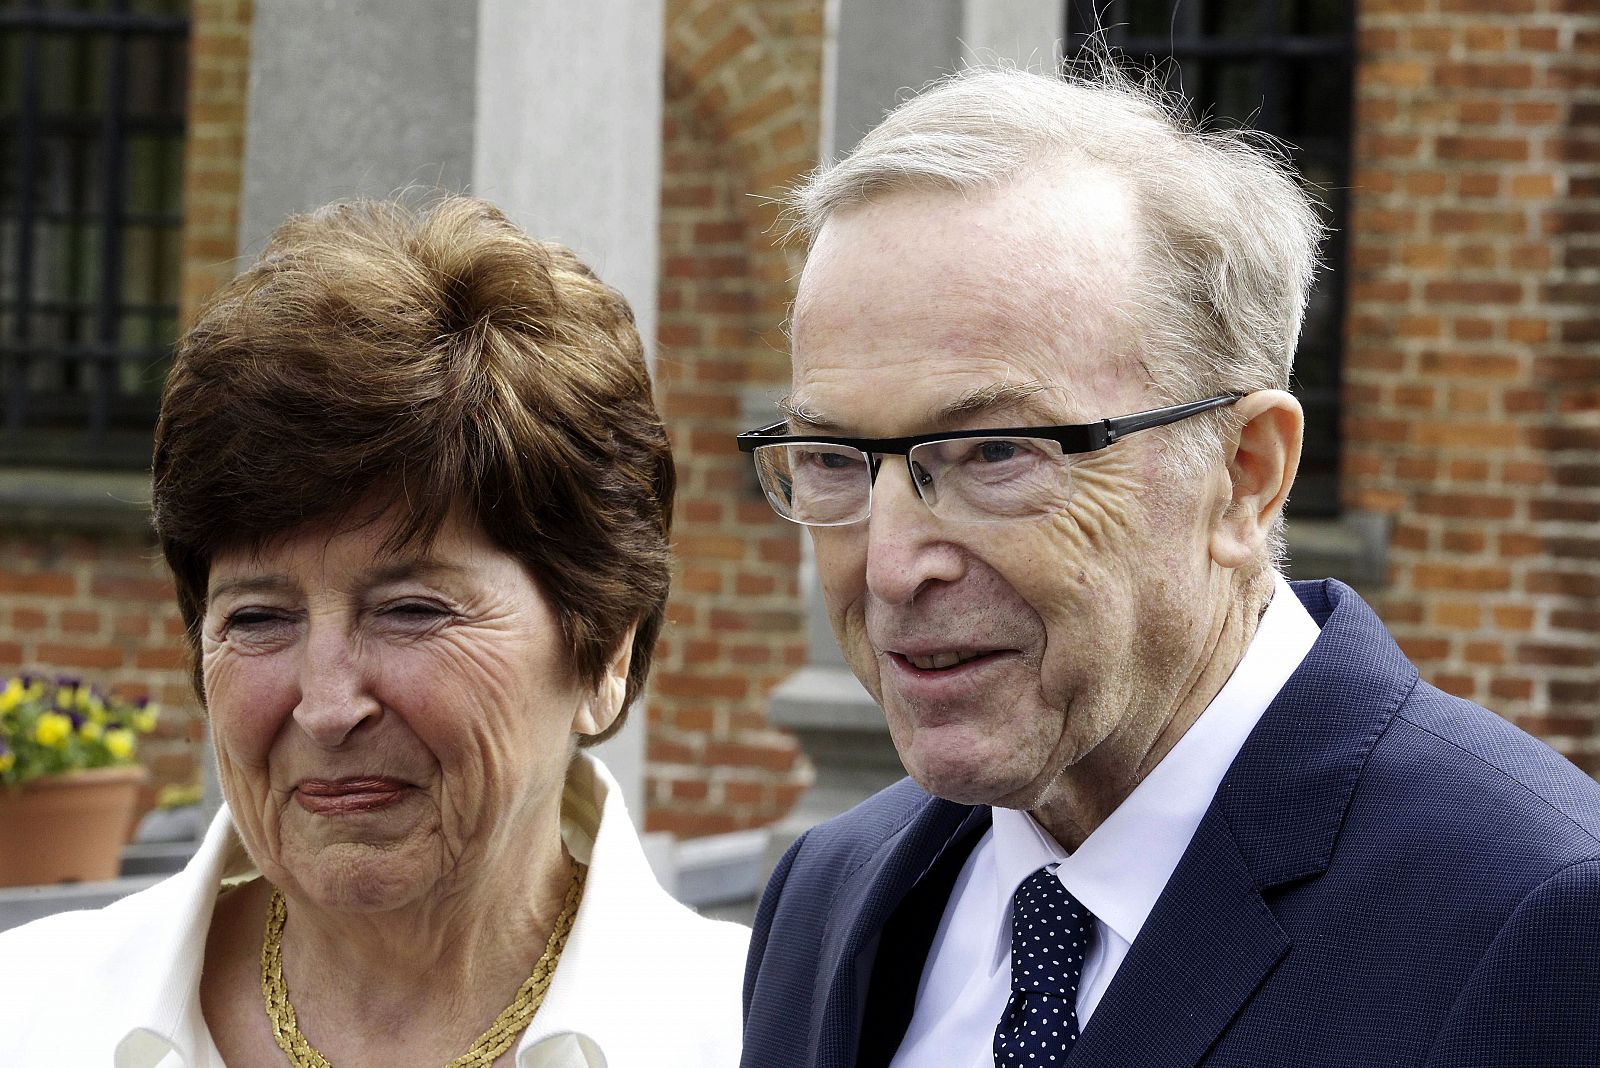 Fotografía de archivo de Wilfried Martens, presidente del Partido Popular Europeo, y su esposa Miet Smet